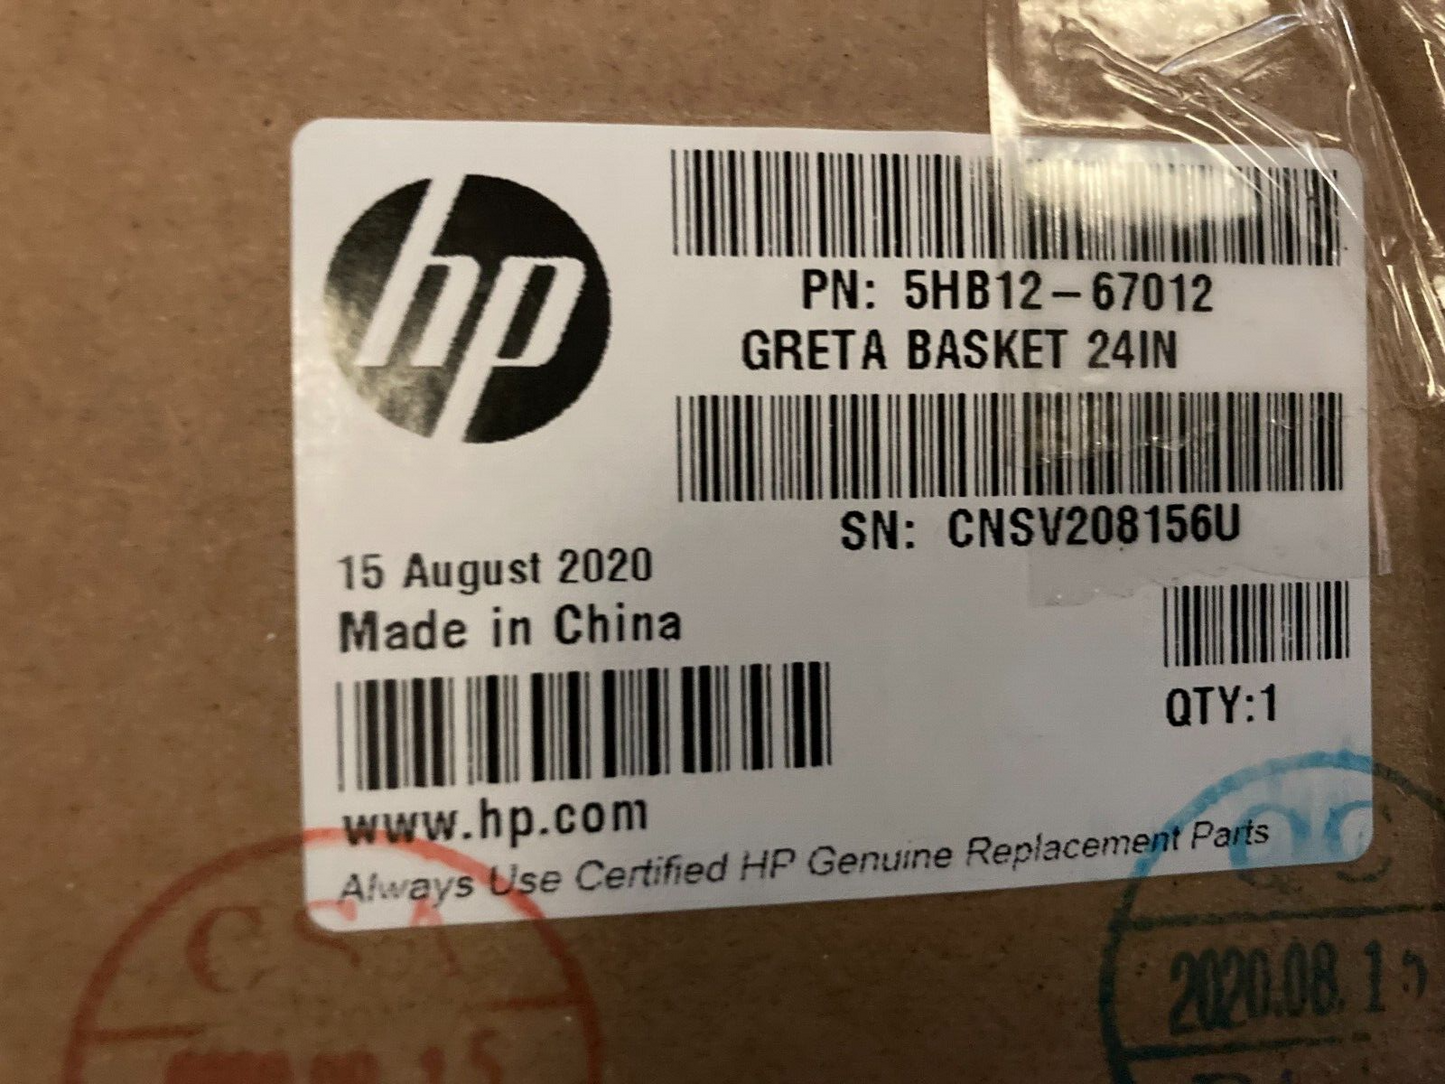 NEW HP 5HB12-67012 Greta Basket 24in DESIGNJET STUDIO 24-IN PRINTER